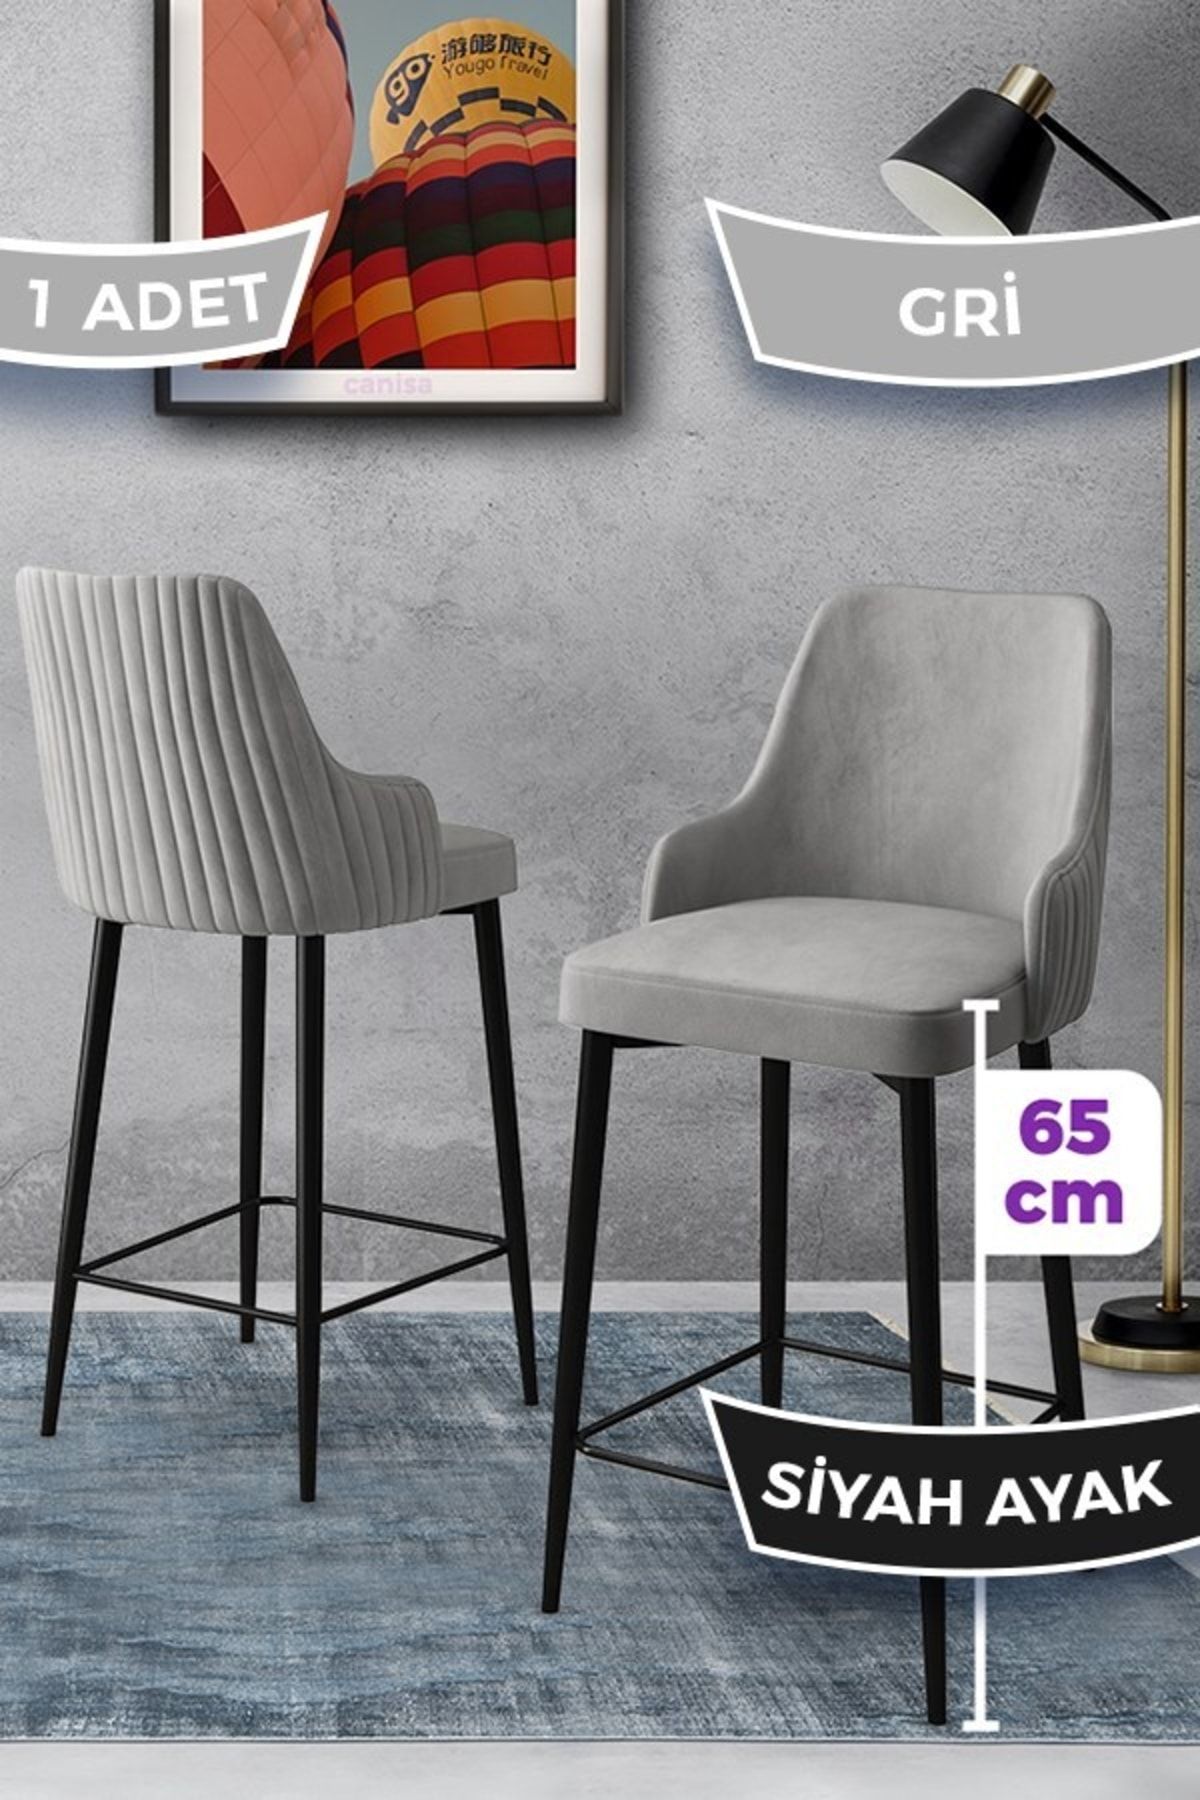 Canisa Tera Serisi 1 Adet 65 Cm Gri Ada Mutfak Bar Sandalyesi Babyface Kumaş Siyah Metal Ayaklı